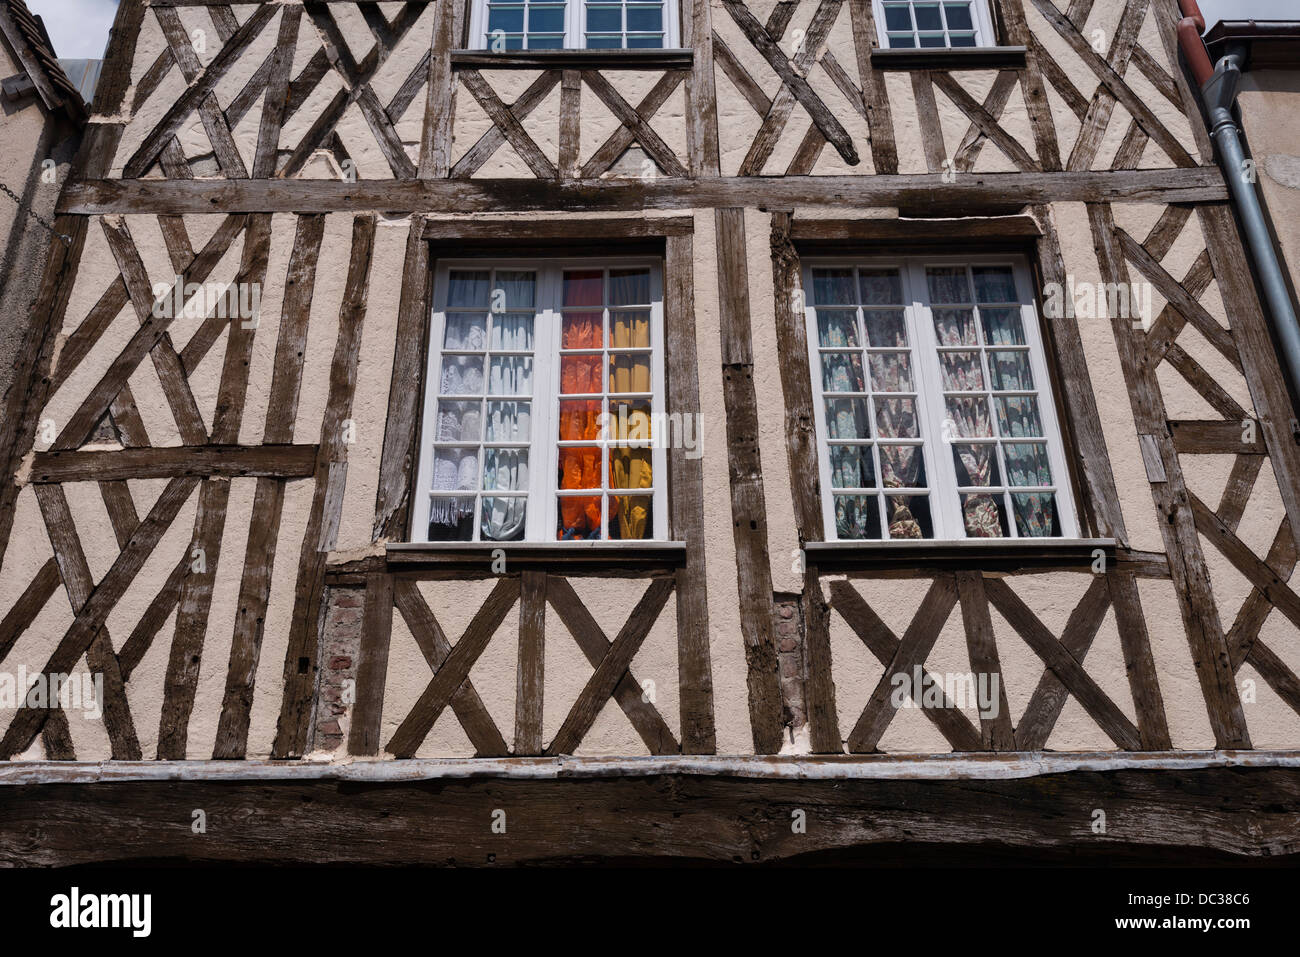 La maison à ossature bois à Chartres, France Banque D'Images